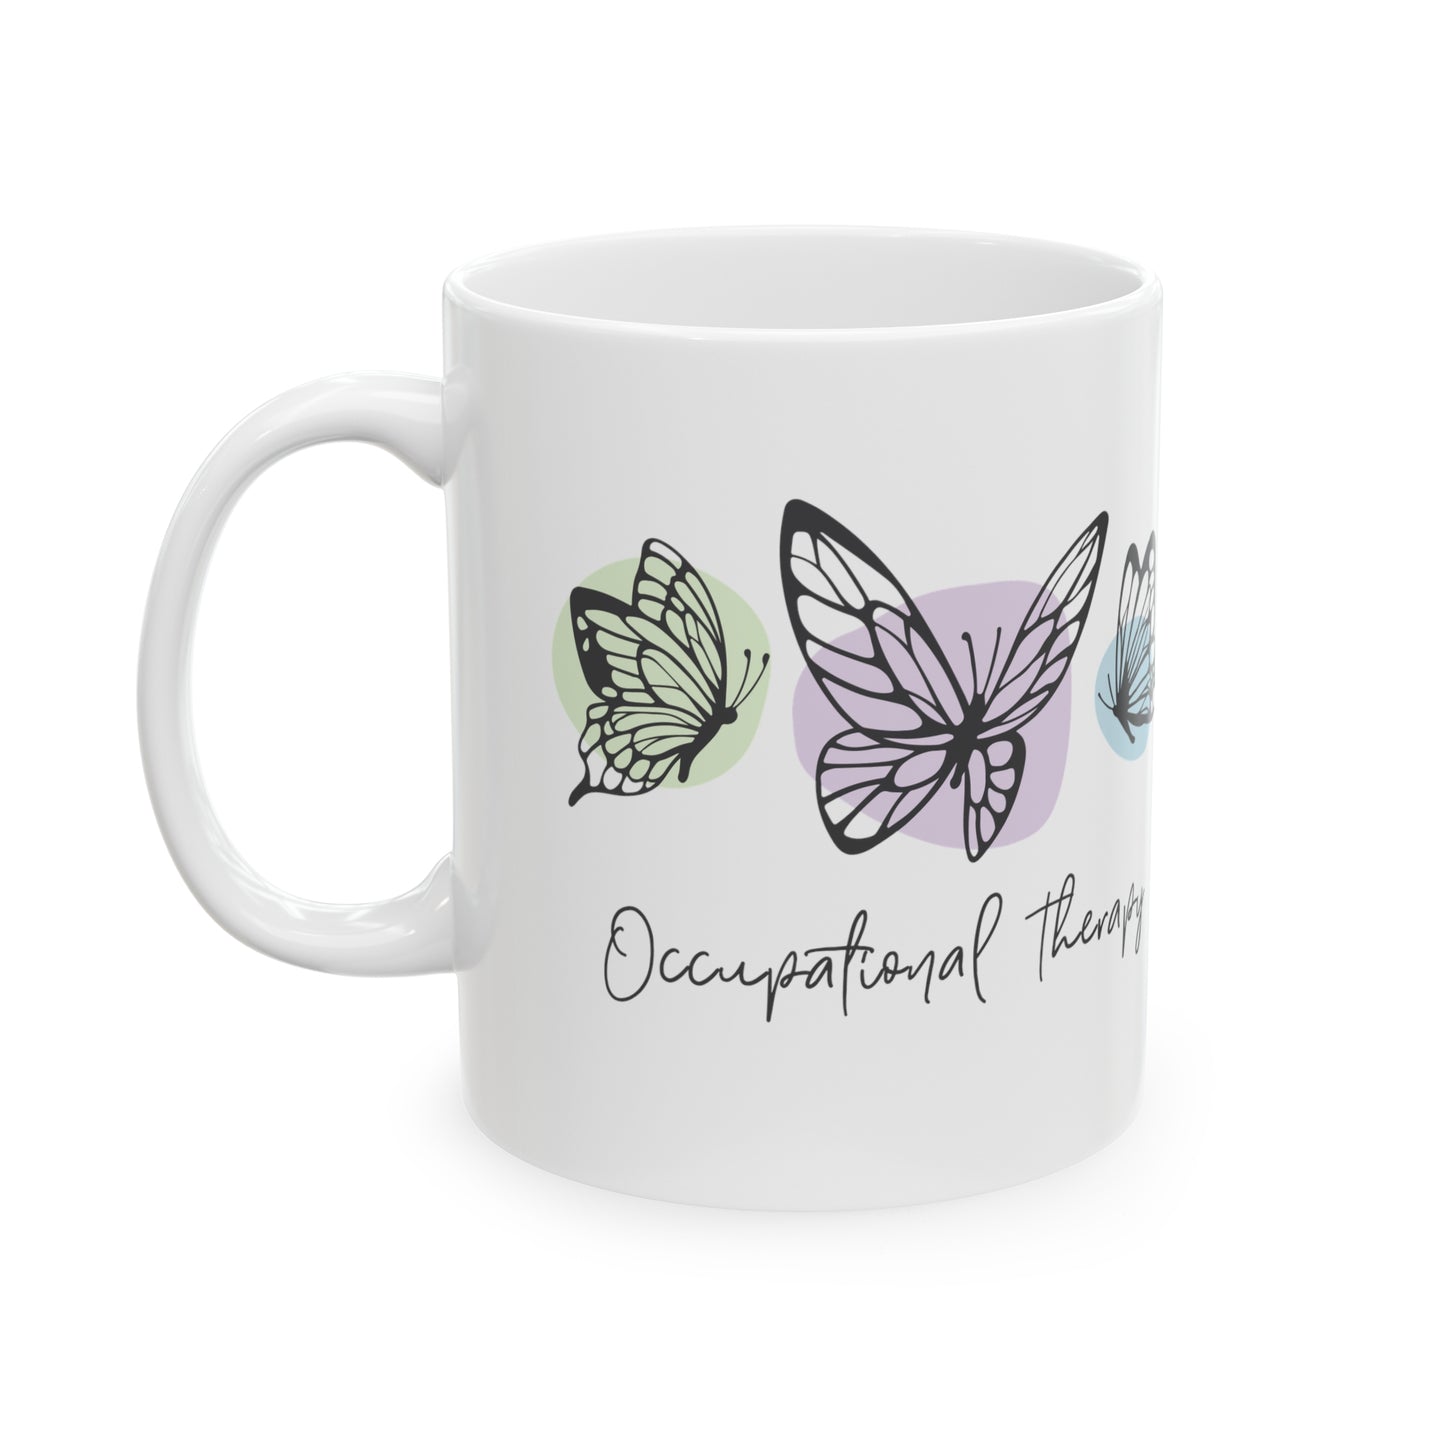 Occupational Therapy Mugs, OT Mugs, Therapist Mugs